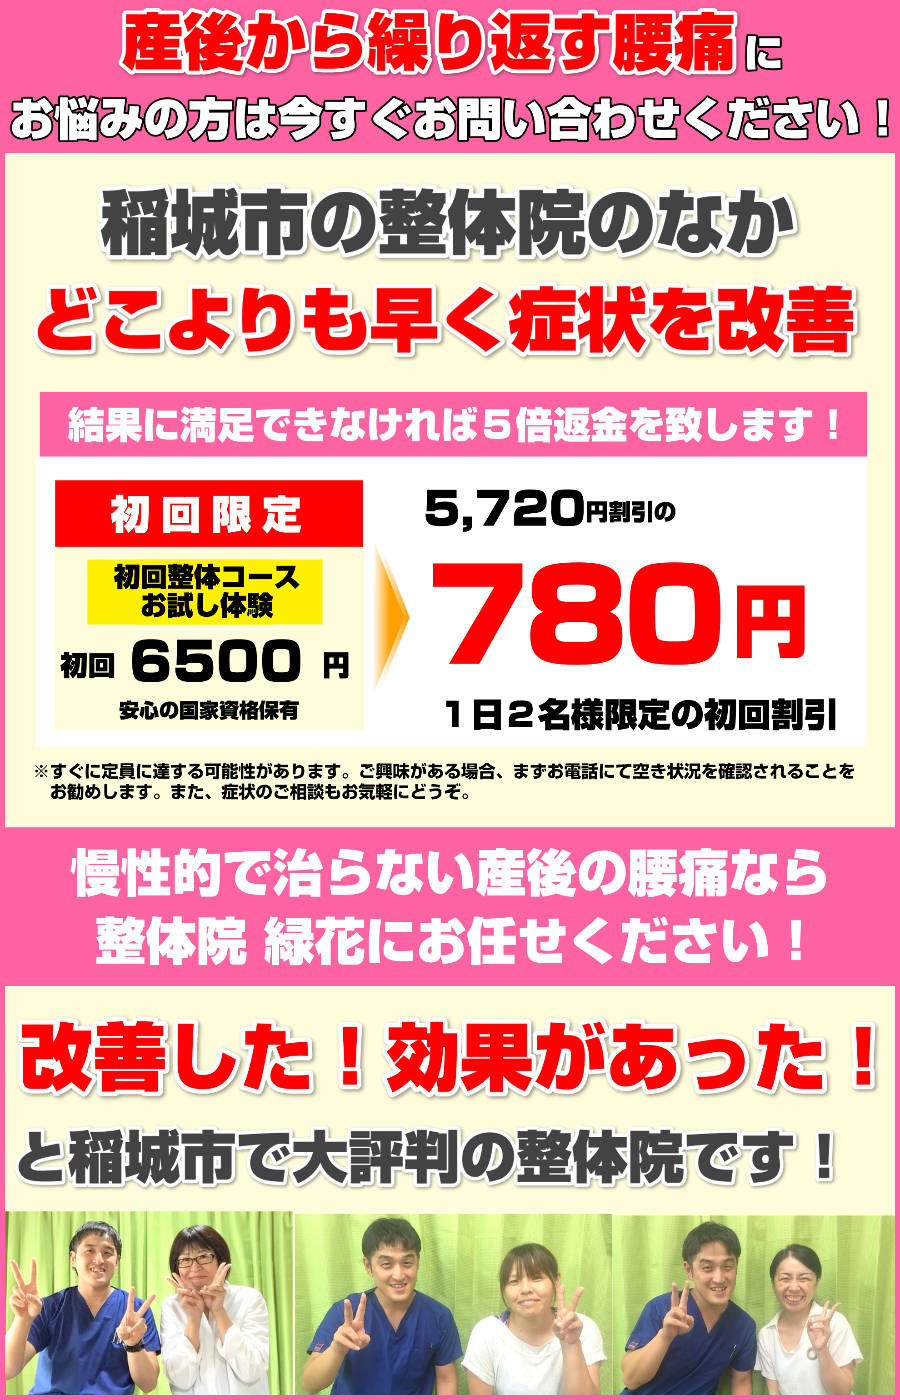 inagishi-seitai-s50000s